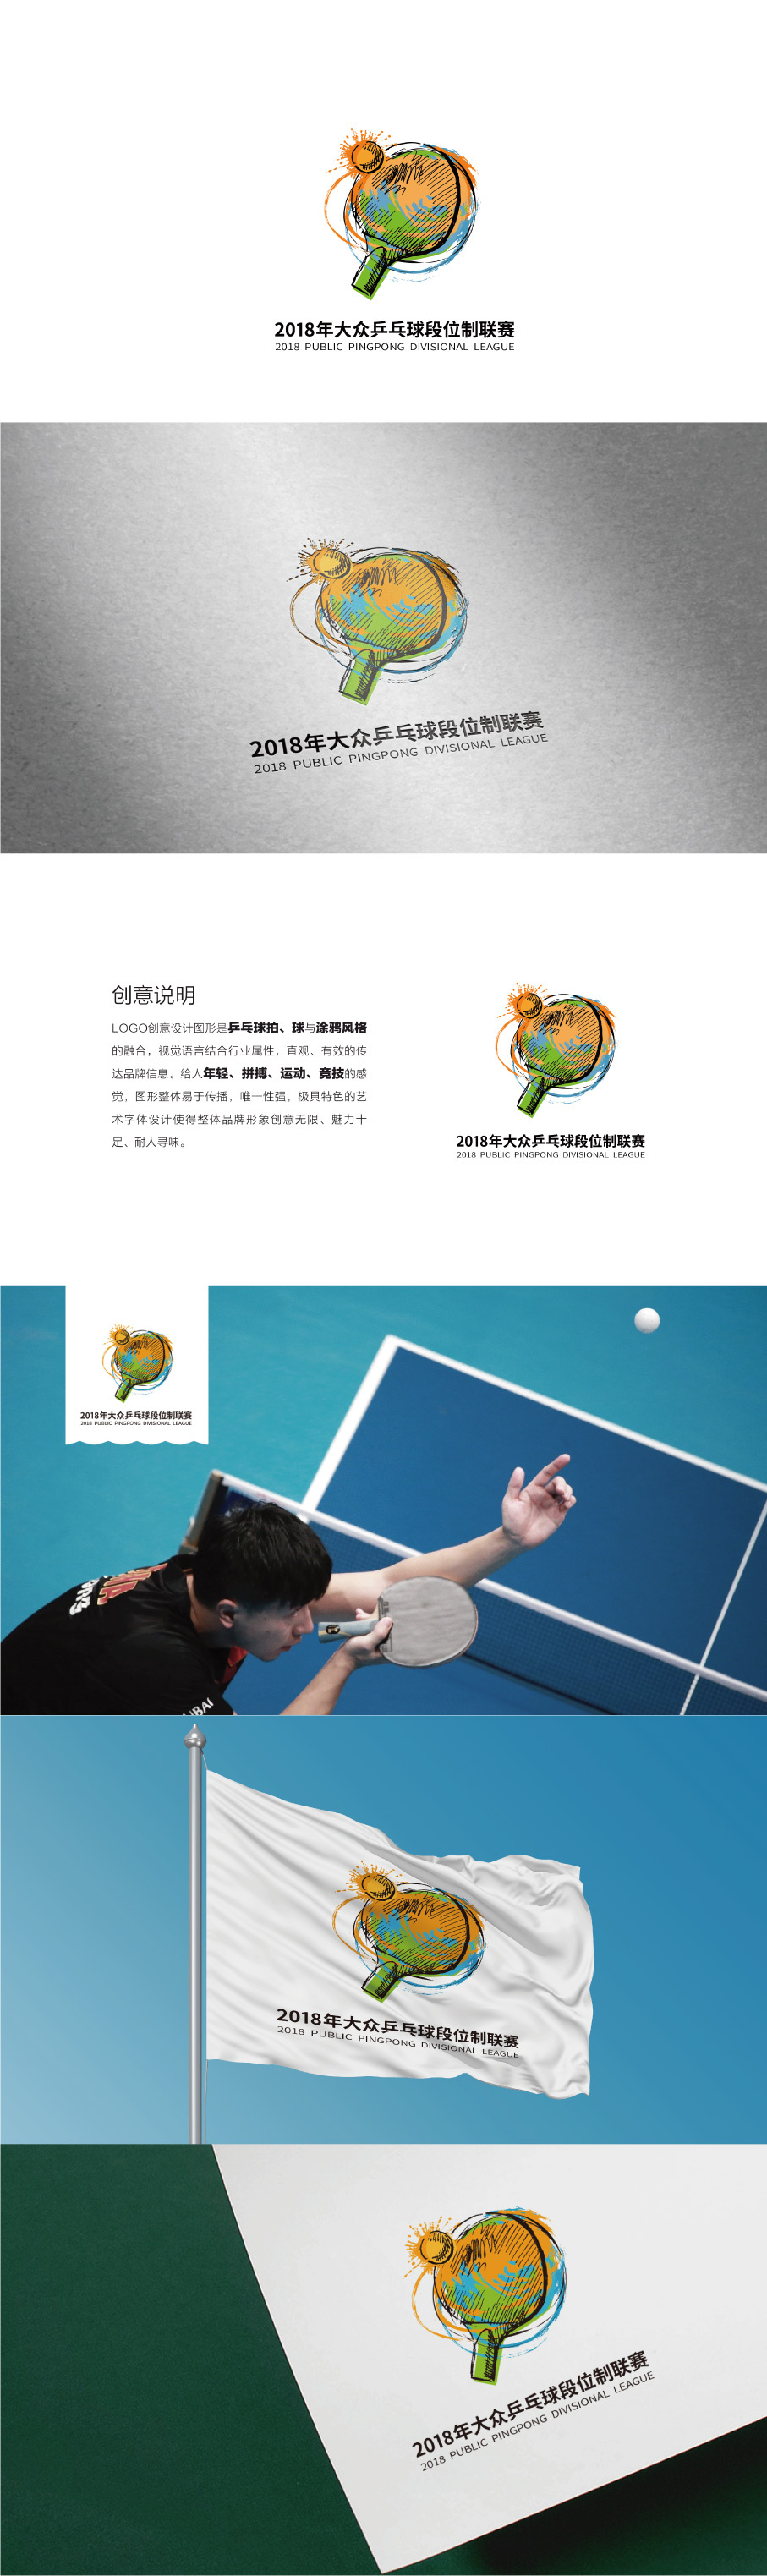  深圳超级体育有限公司   乒乓球段位制联赛图0